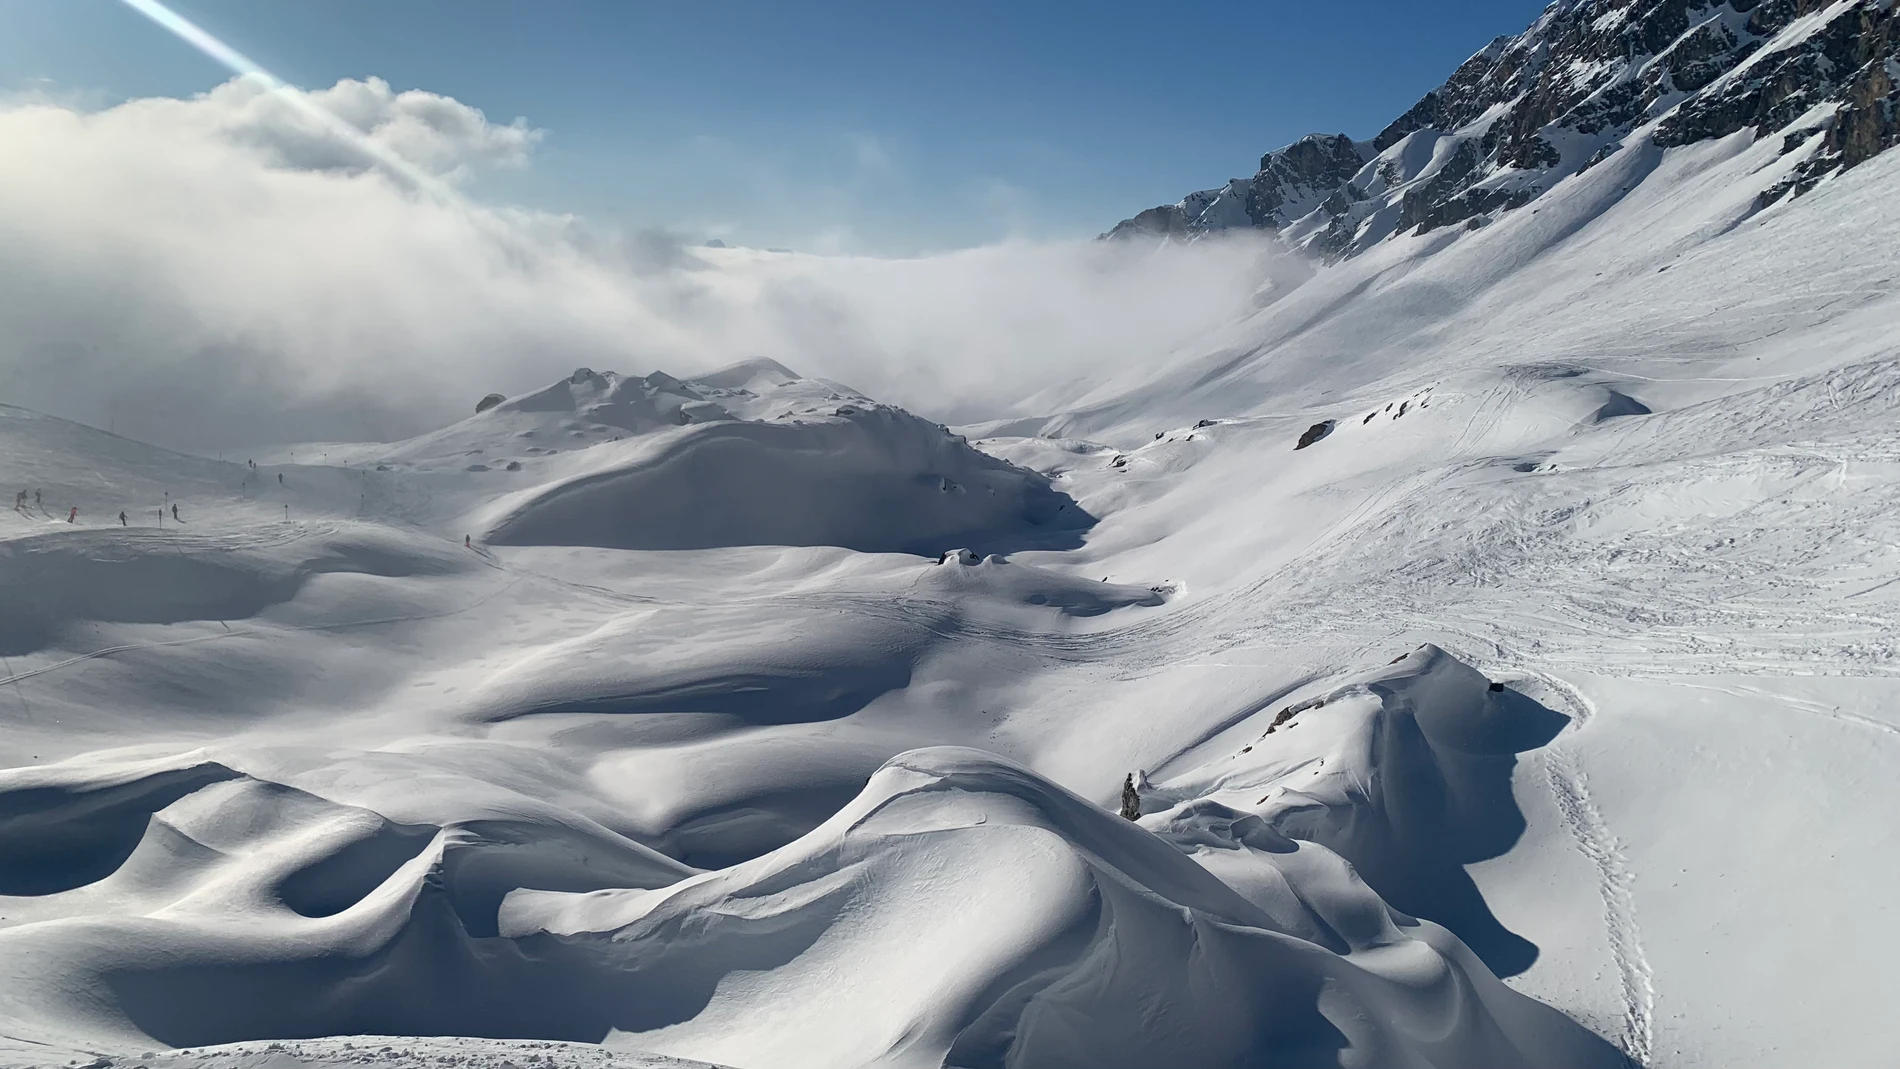 Montañas y fantásticos valles repletos de nieve que parecen no acabarse nunca